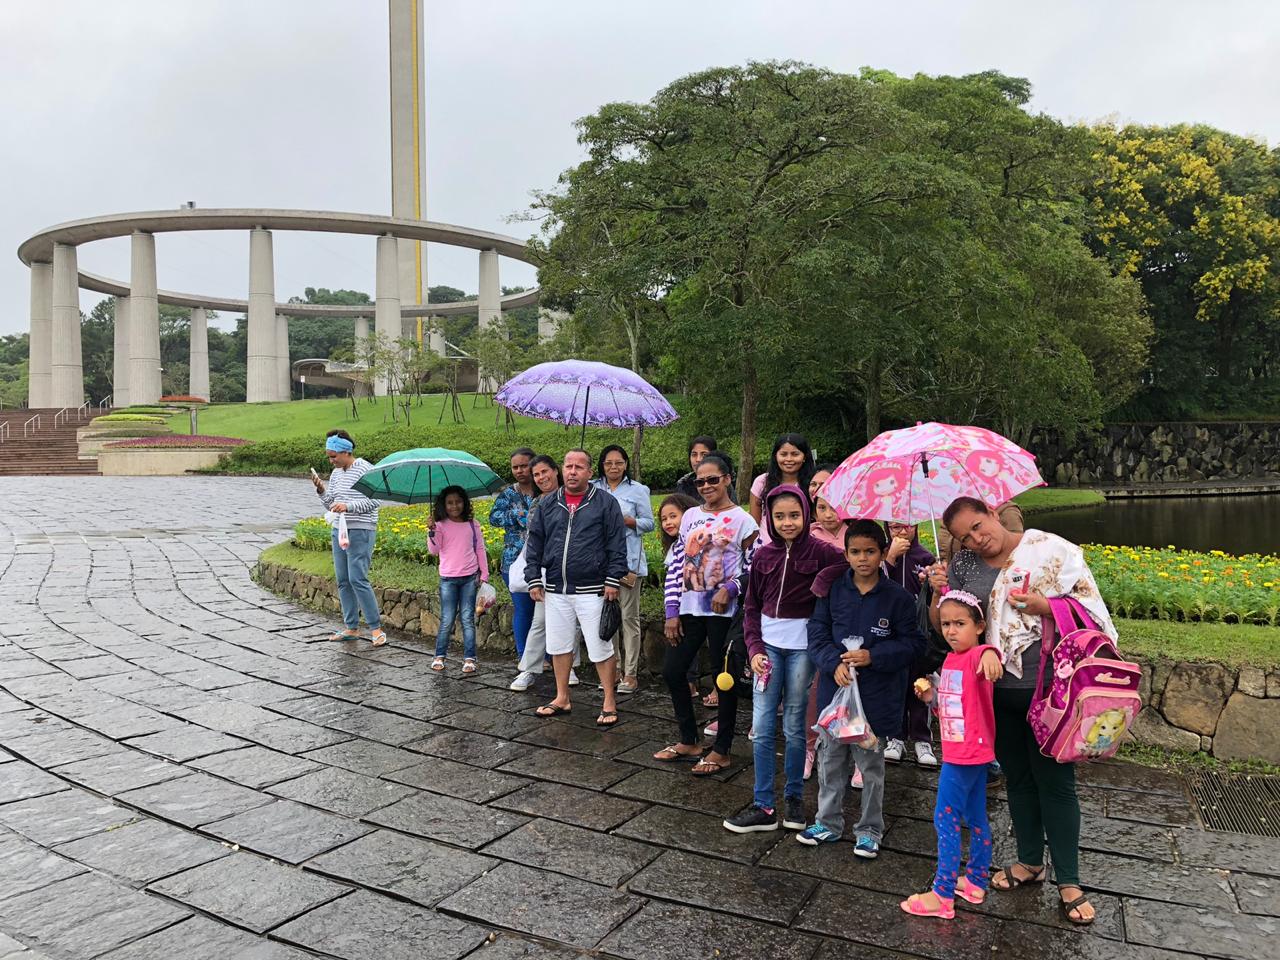 Homens, mulheres e seus filhos, em torno de 18 pessoas, posam para foto, algumas segurando guarda-chuvas, em jardim do Solo Sagrado de Guarapiranga